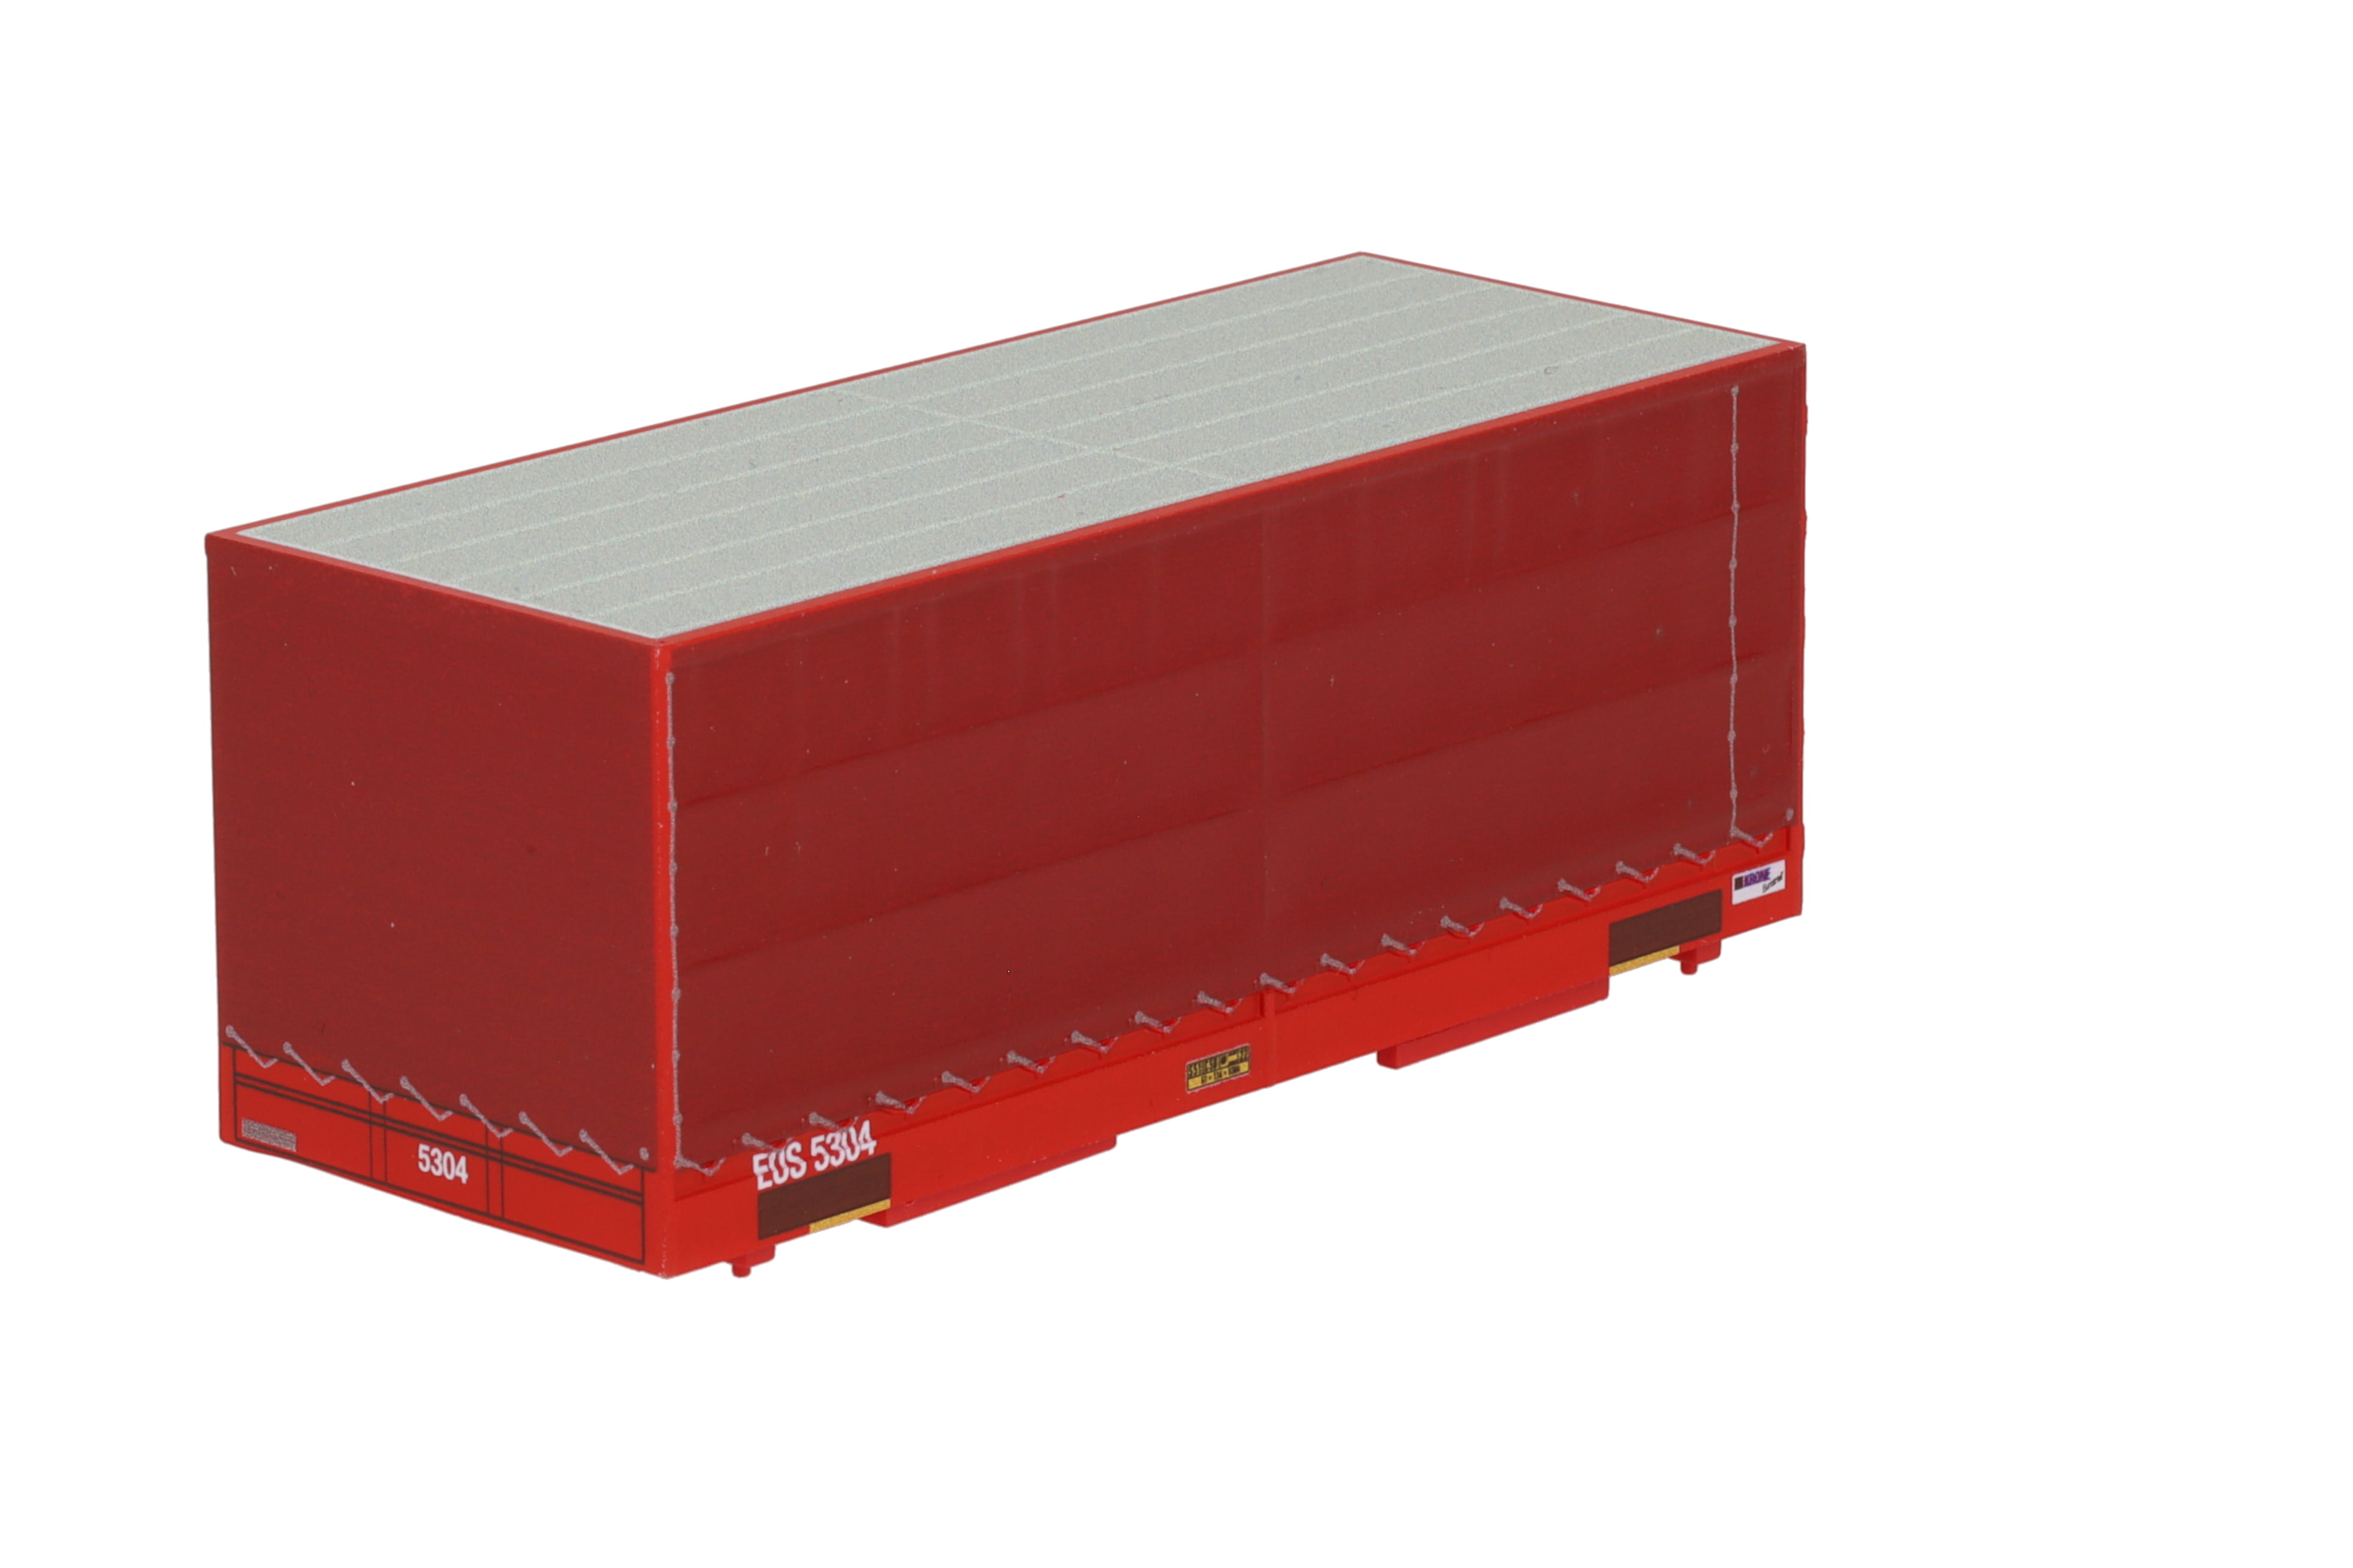 1:87 Container WB-C715 EURO- SHUTTLE, Wechselbehälter WB-C 715 PP Pritsche / Plane, Behälter-Nr: EUS 5304